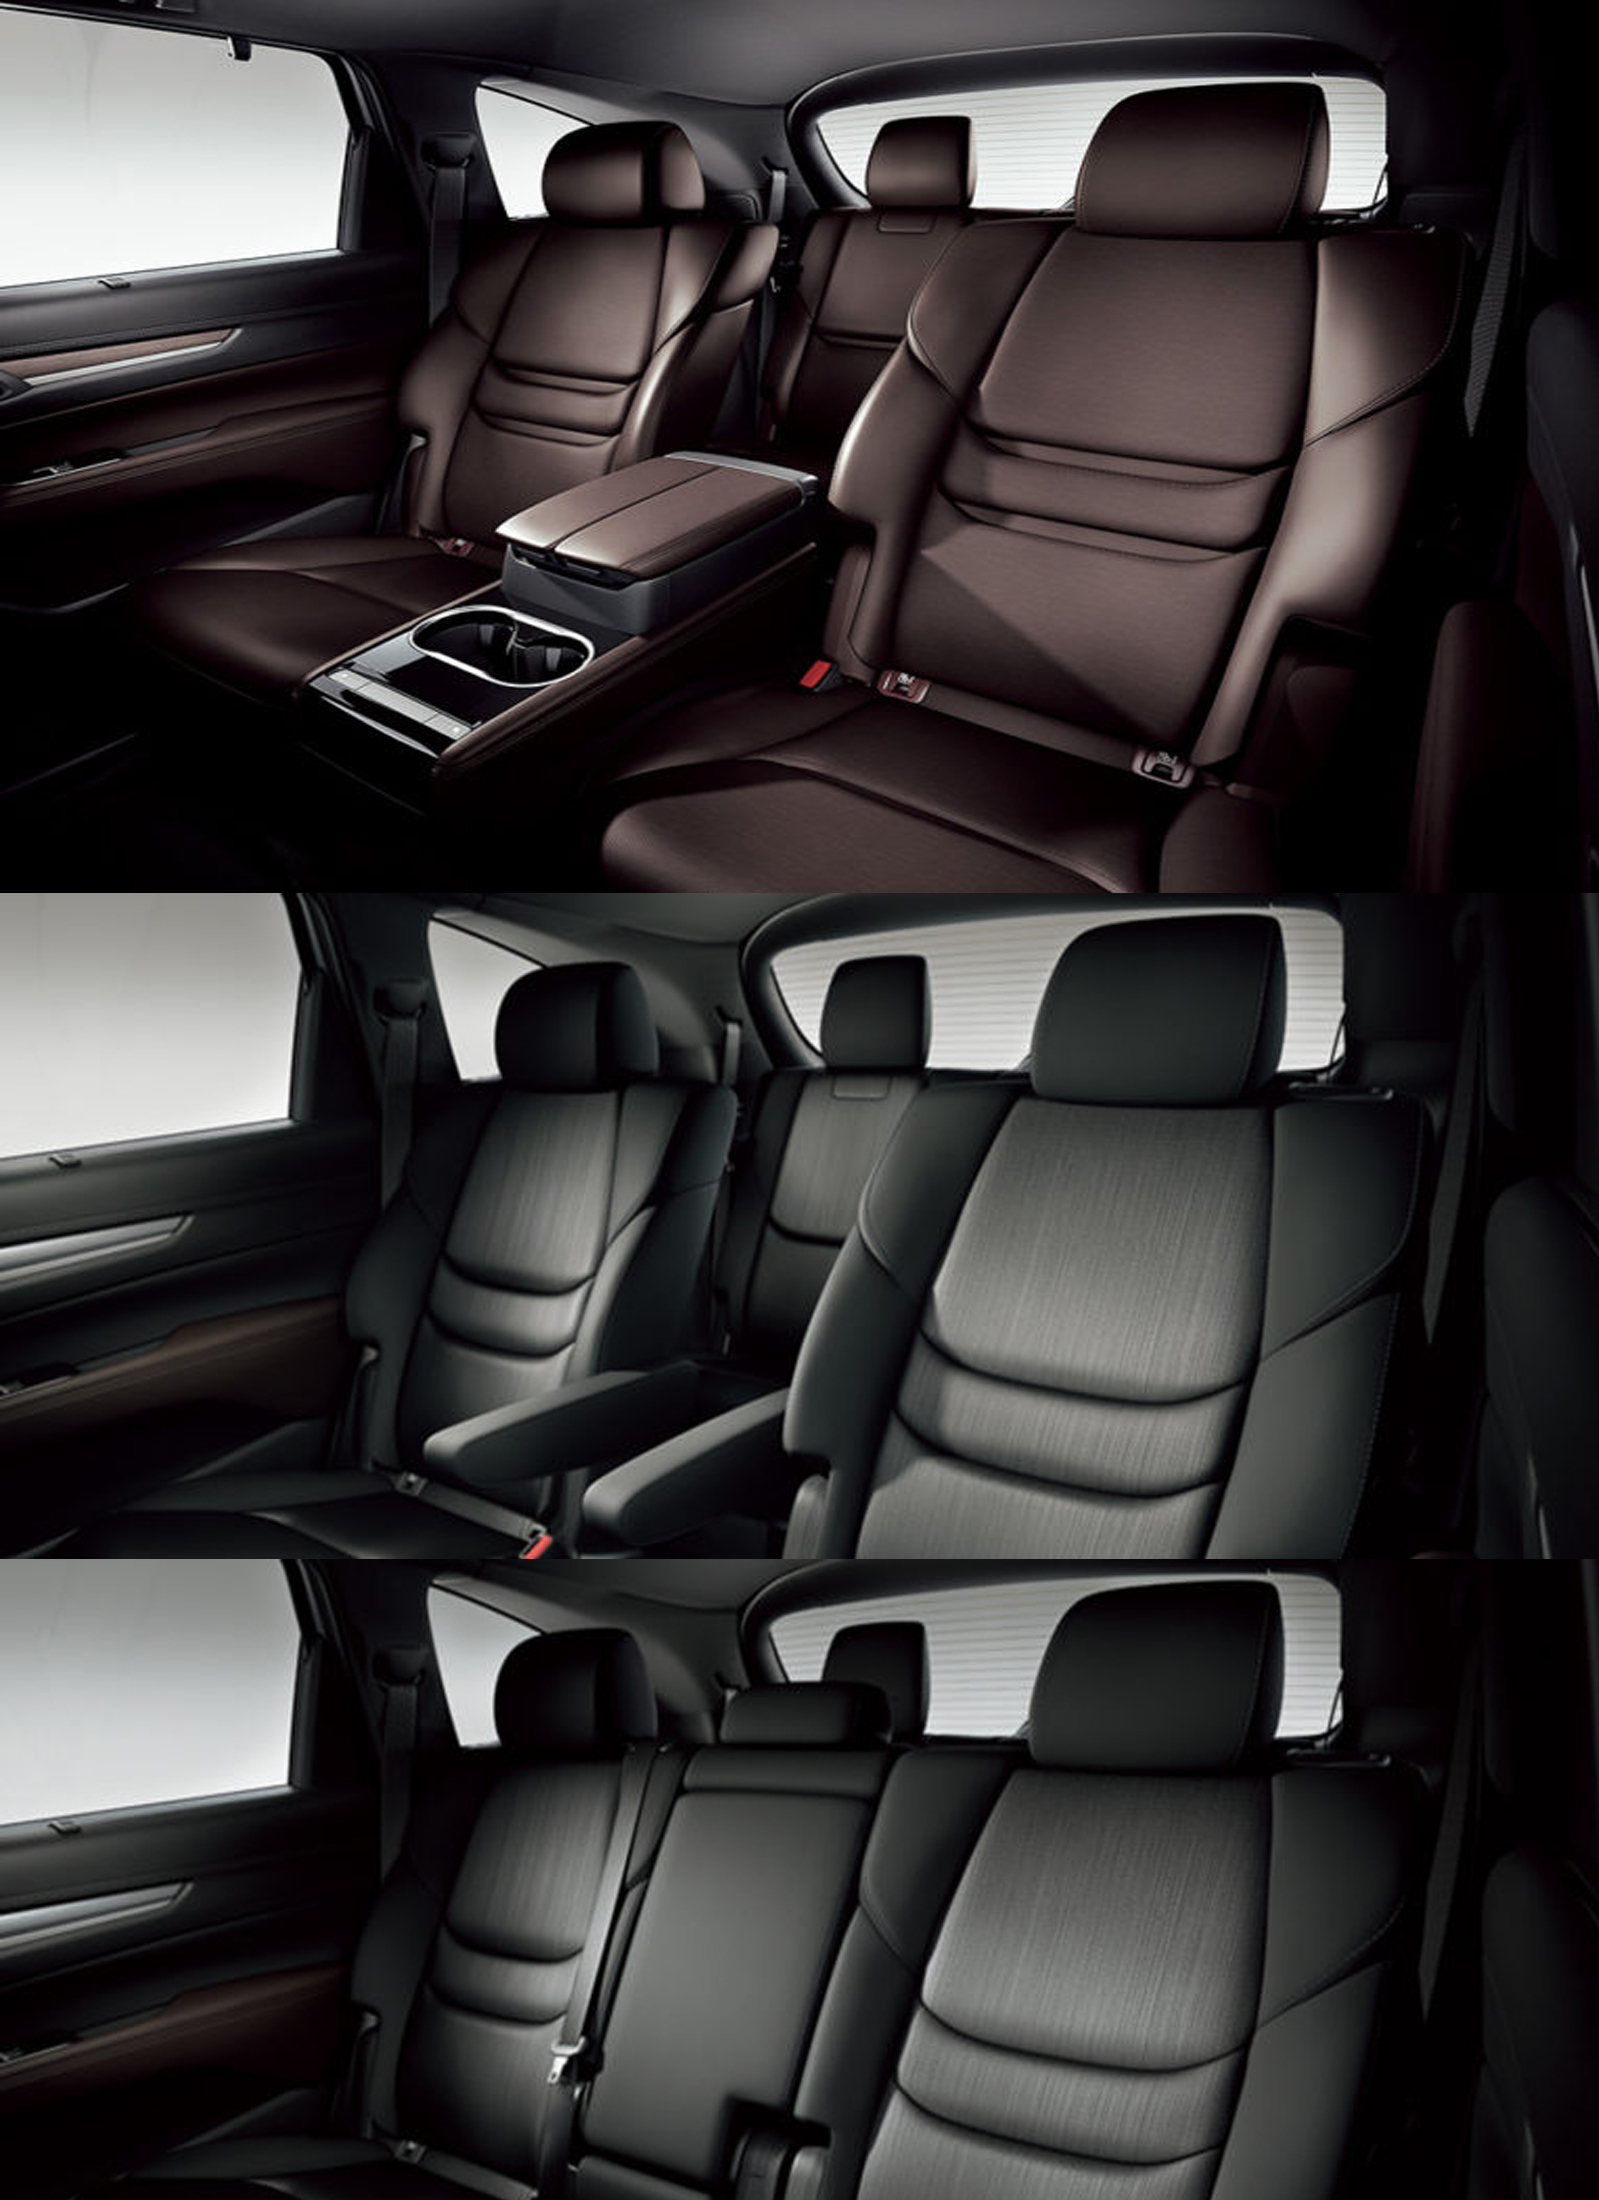 Cx 8のサイズはどれ位か 後部座席やトランクの大きさは 車趣味 個性的な車に乗りたい人がたどり着くサイト